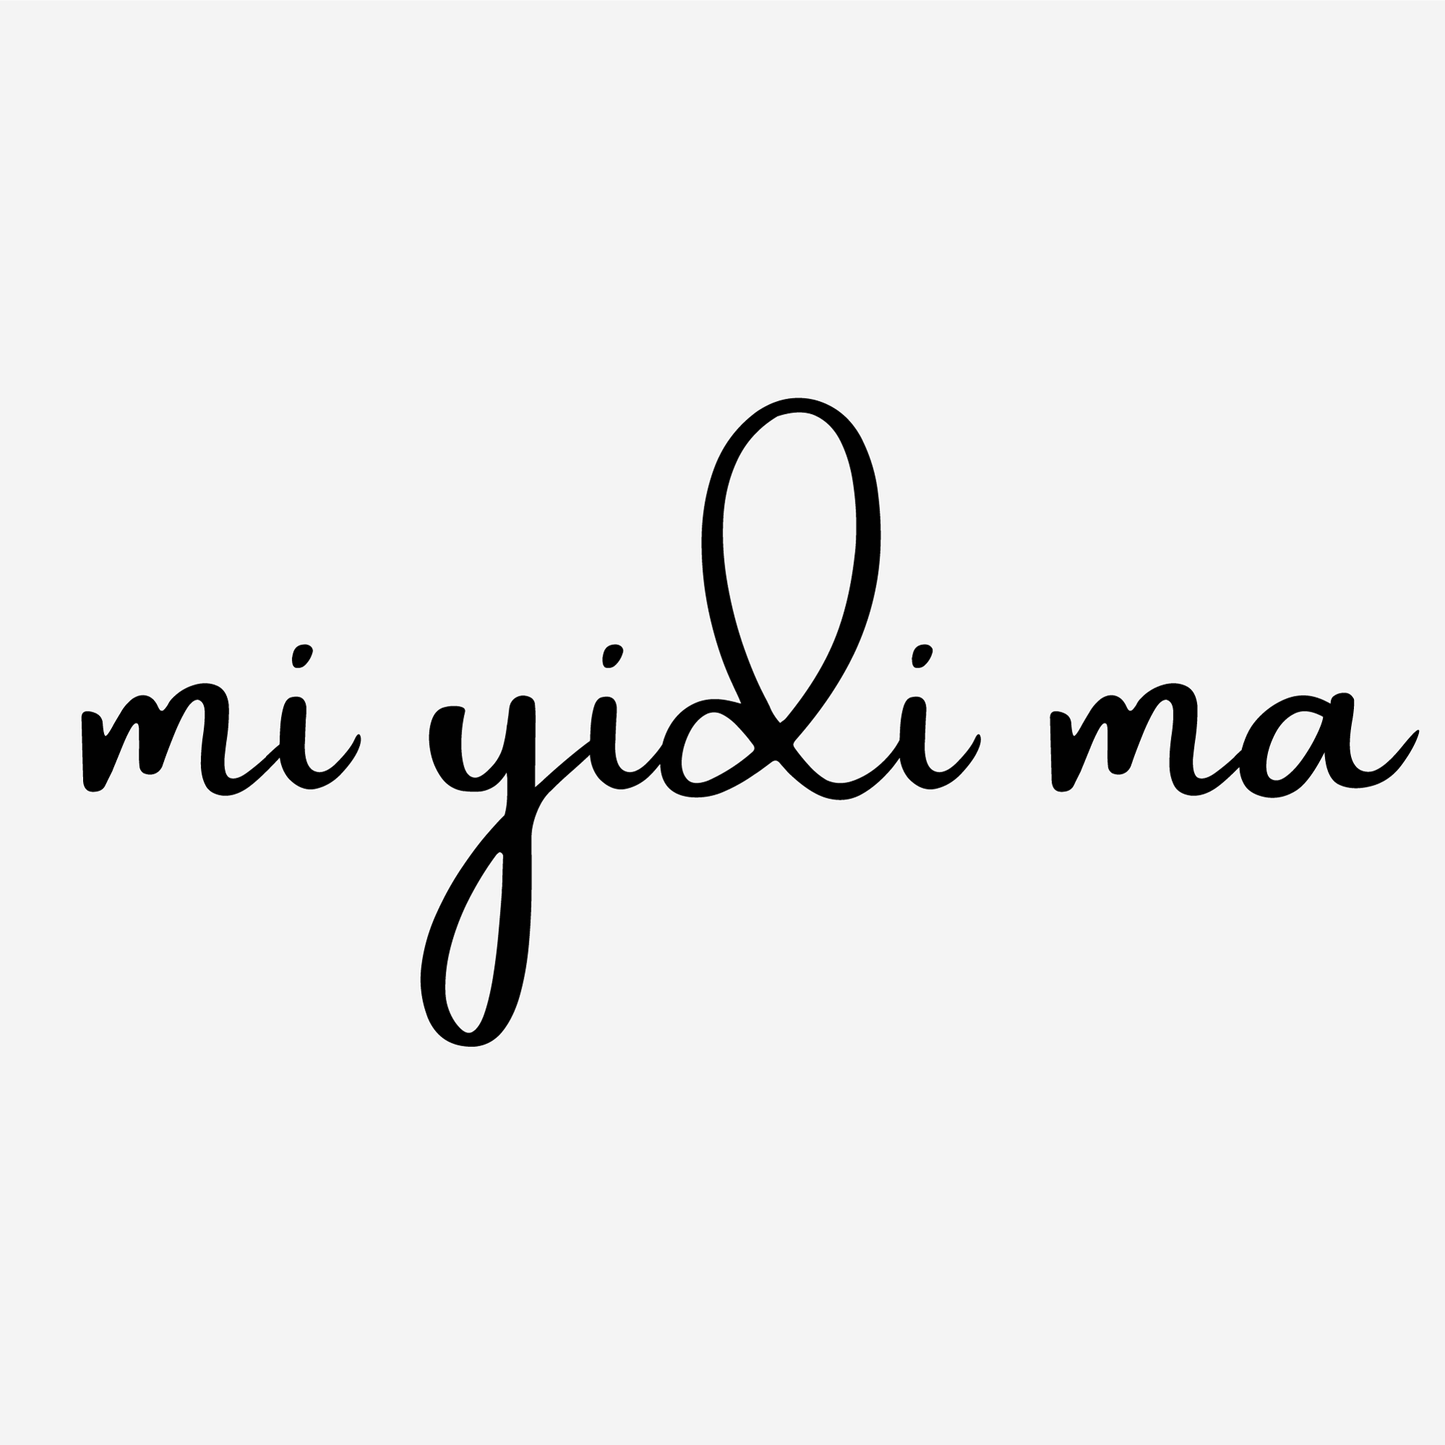 "I love you" in Fulfulde - "Mi yidi ma" poster